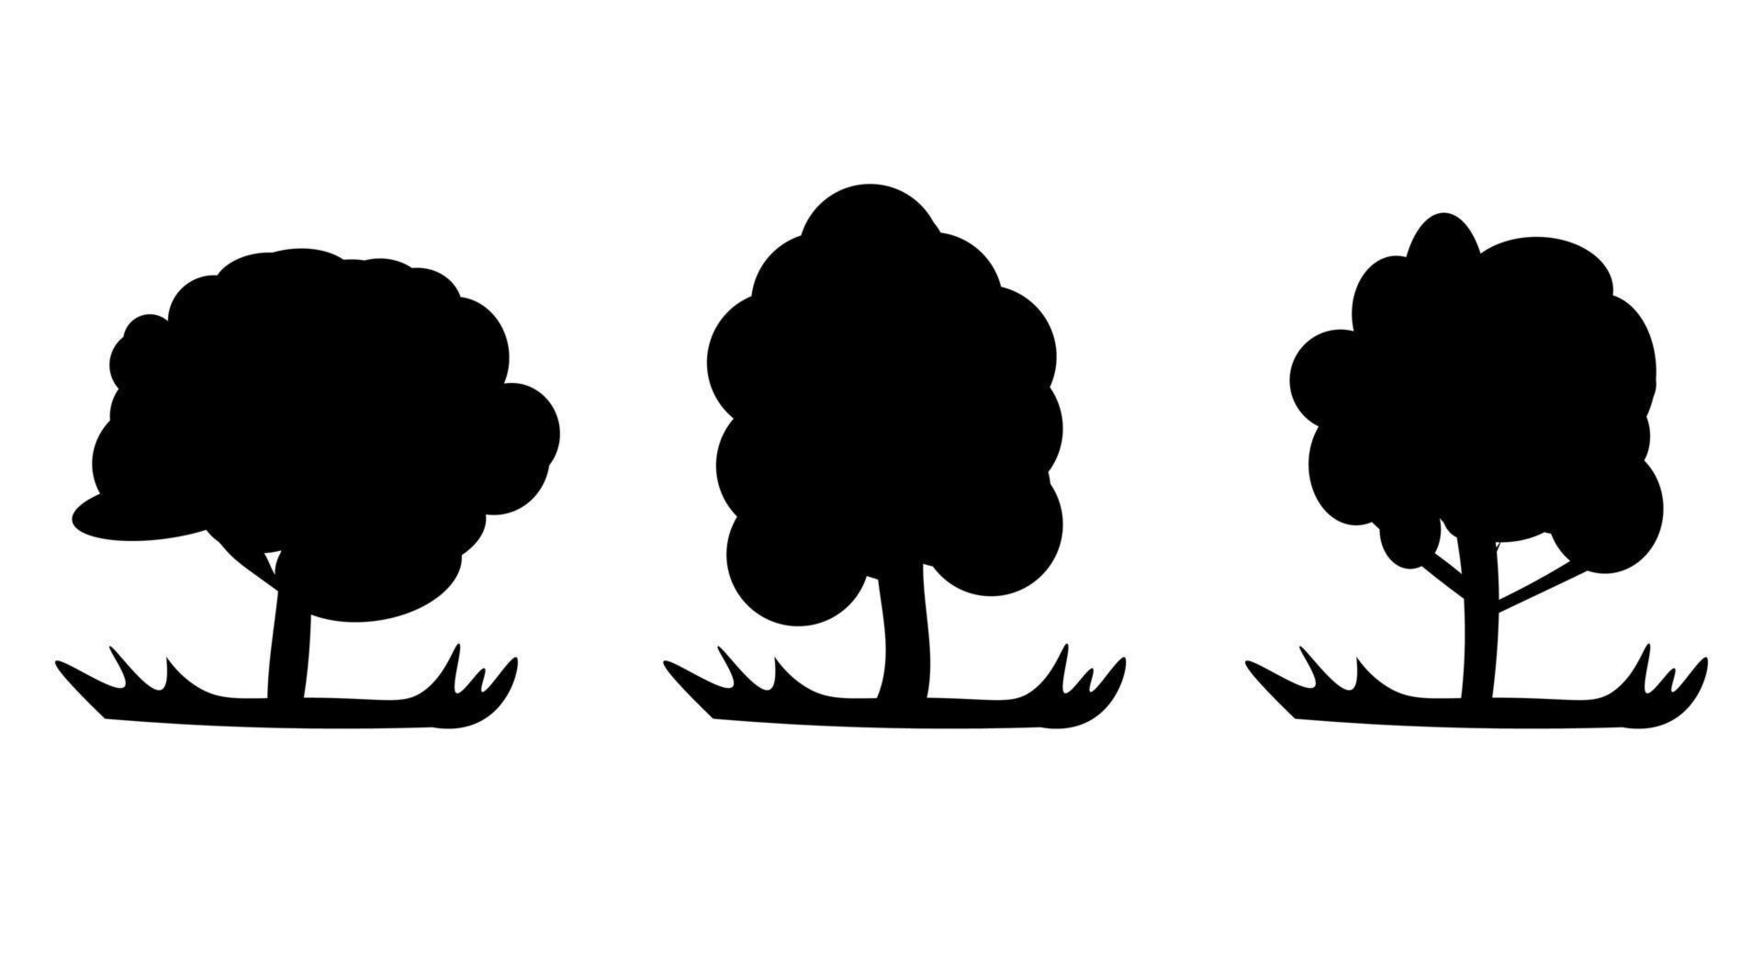 sagome di alberi in vettoriale eps 10. sagome di vari alberi